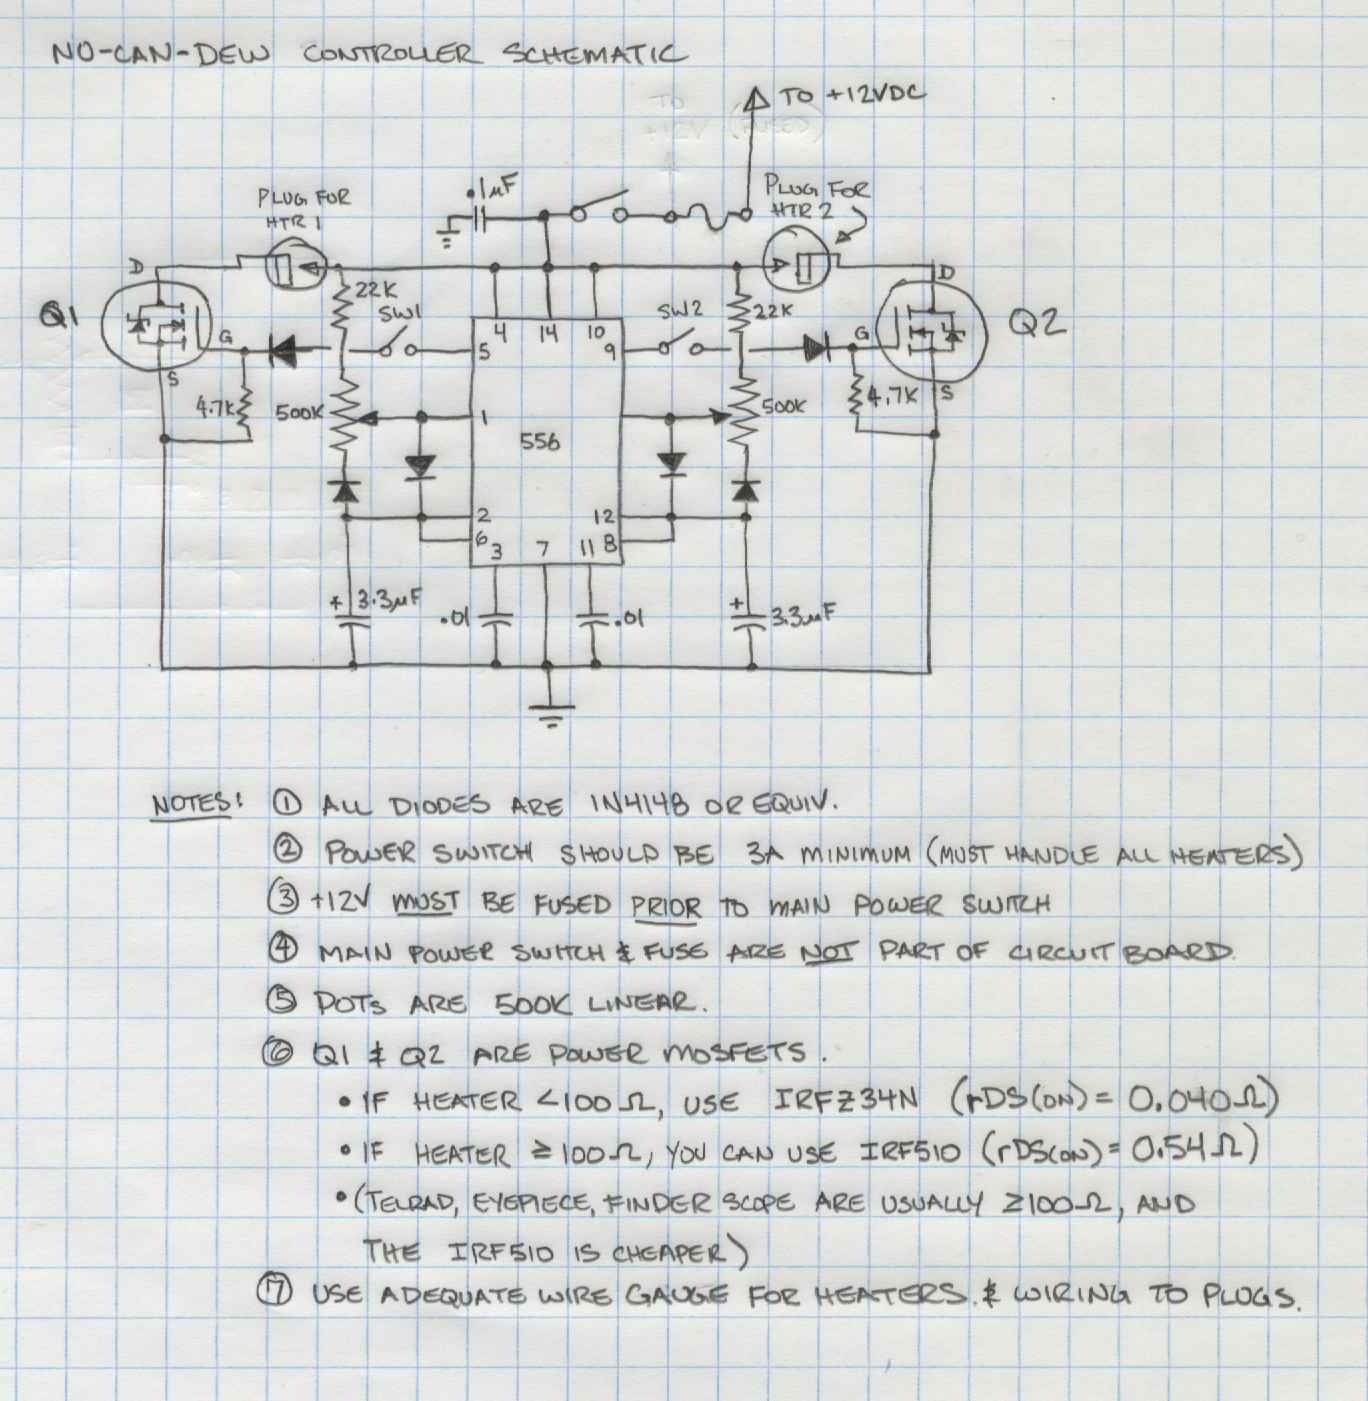 controller_schematic.JPG